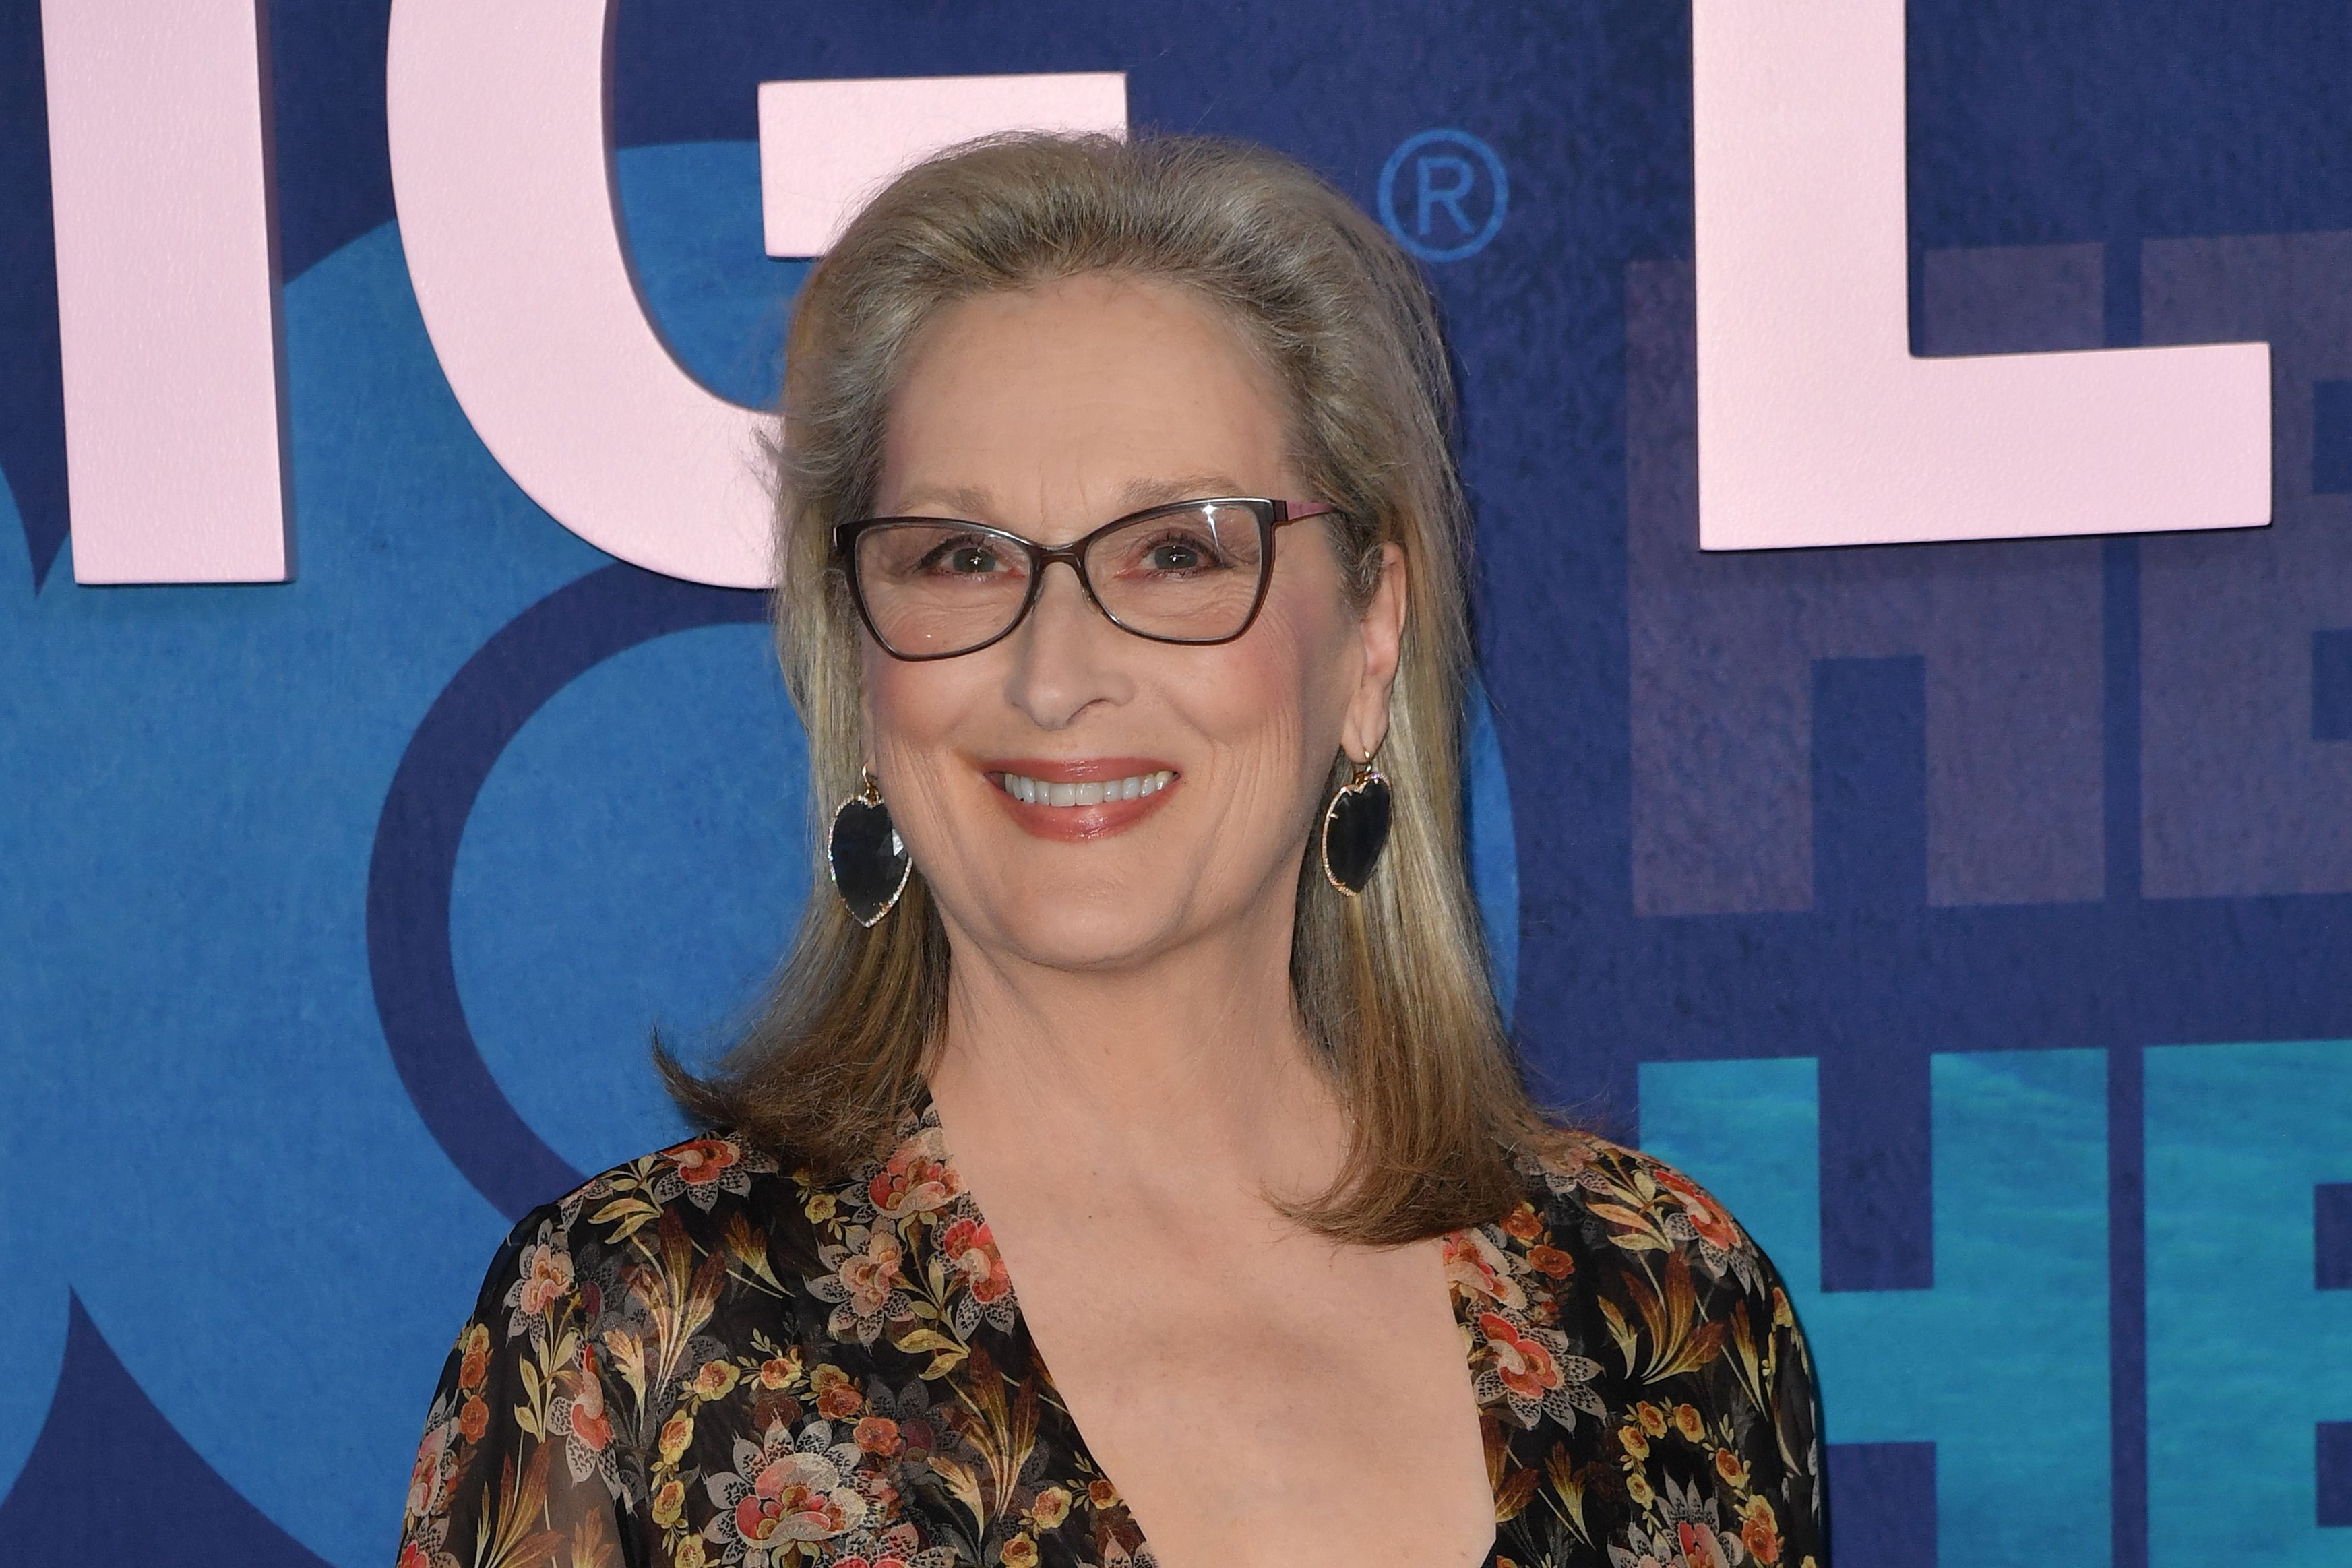 La actriz estadounidense Meryl Streep durante el estreno de la segunda temporada de "Big Little Lies" en Nueva York, EE. UU. (Foto Prensa Libre: AFP)